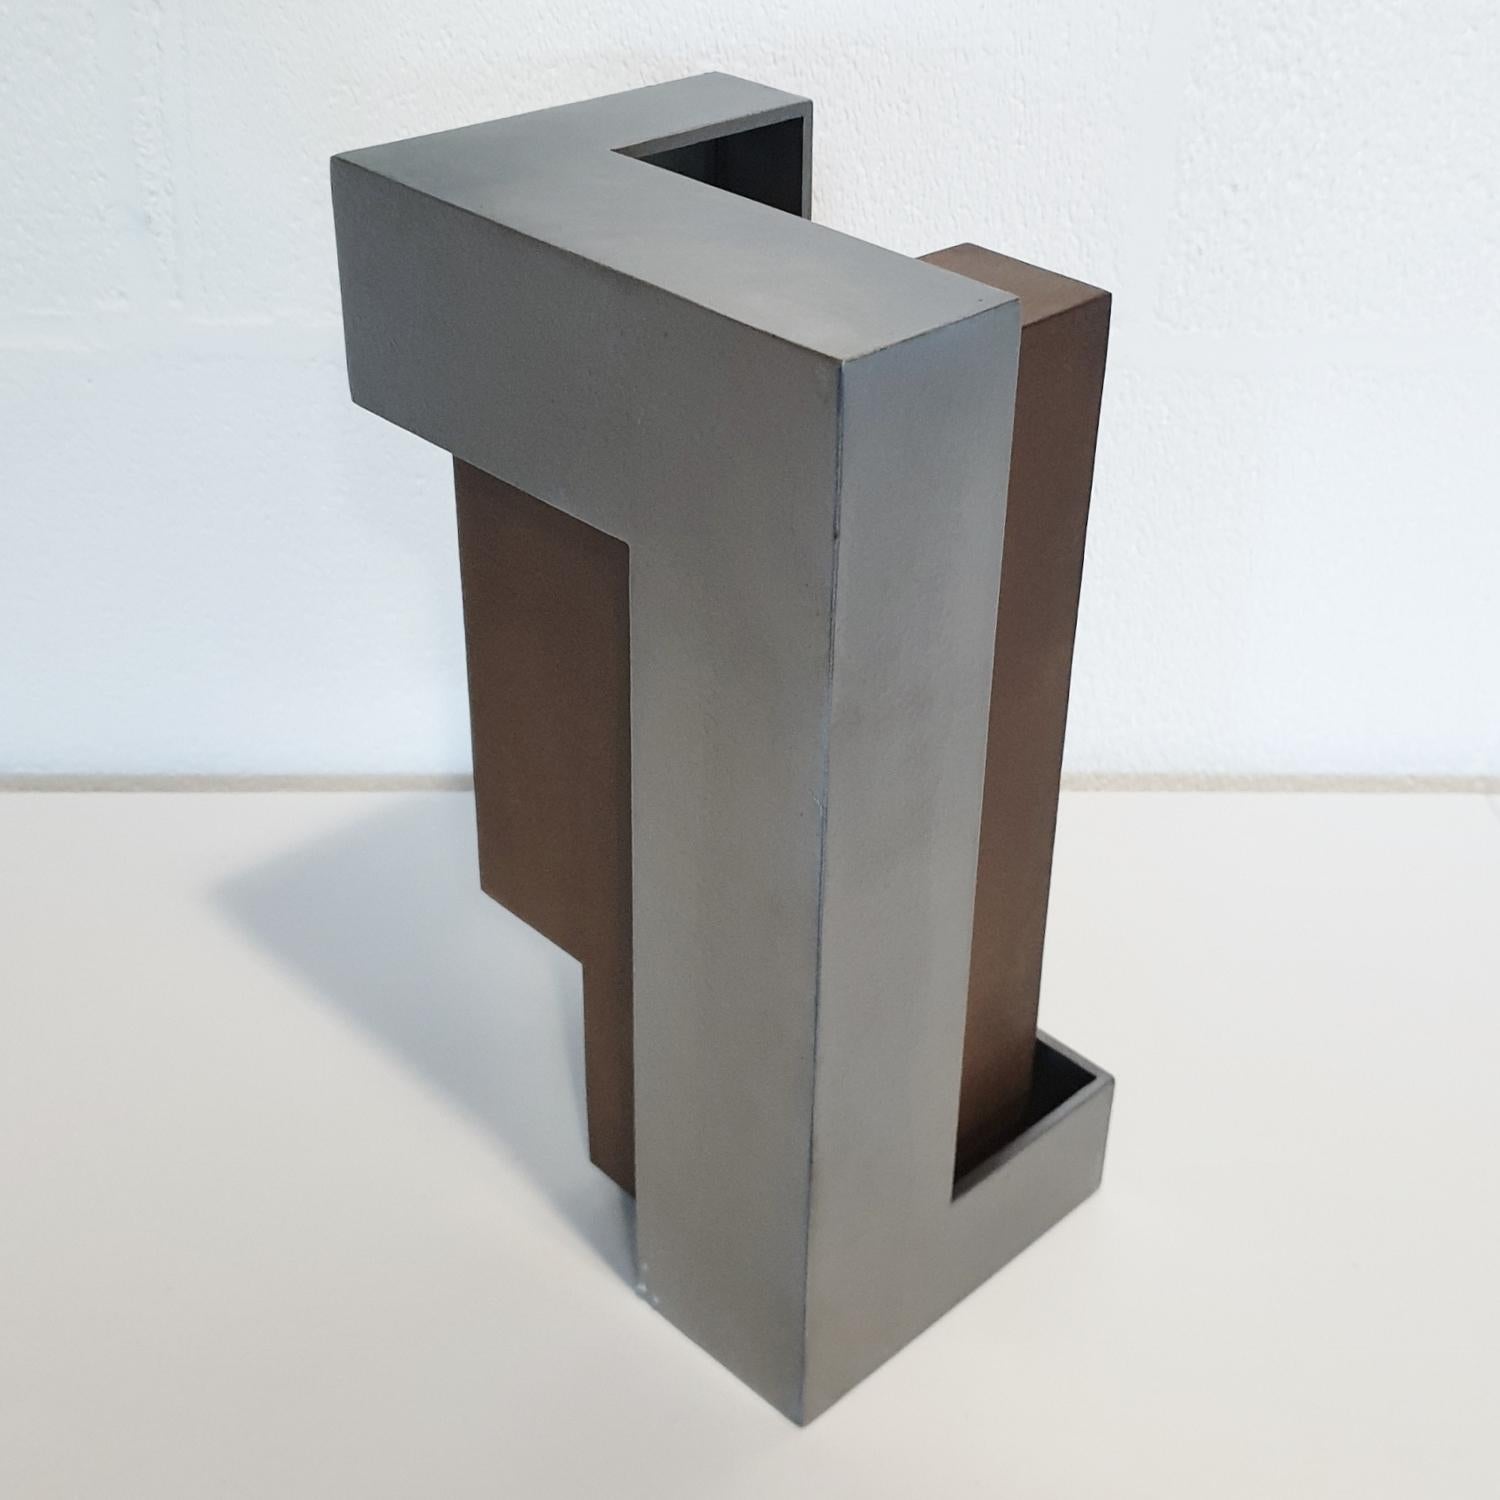 Pareja 05 est une sculpture abstraite moderne contemporaine unique de l'artiste espagnol Eduardo Lacoma, issue de sa dernière série Pareja, qui signifie couple en espagnol. La sculpture se compose de deux constructions faites à la main en acier